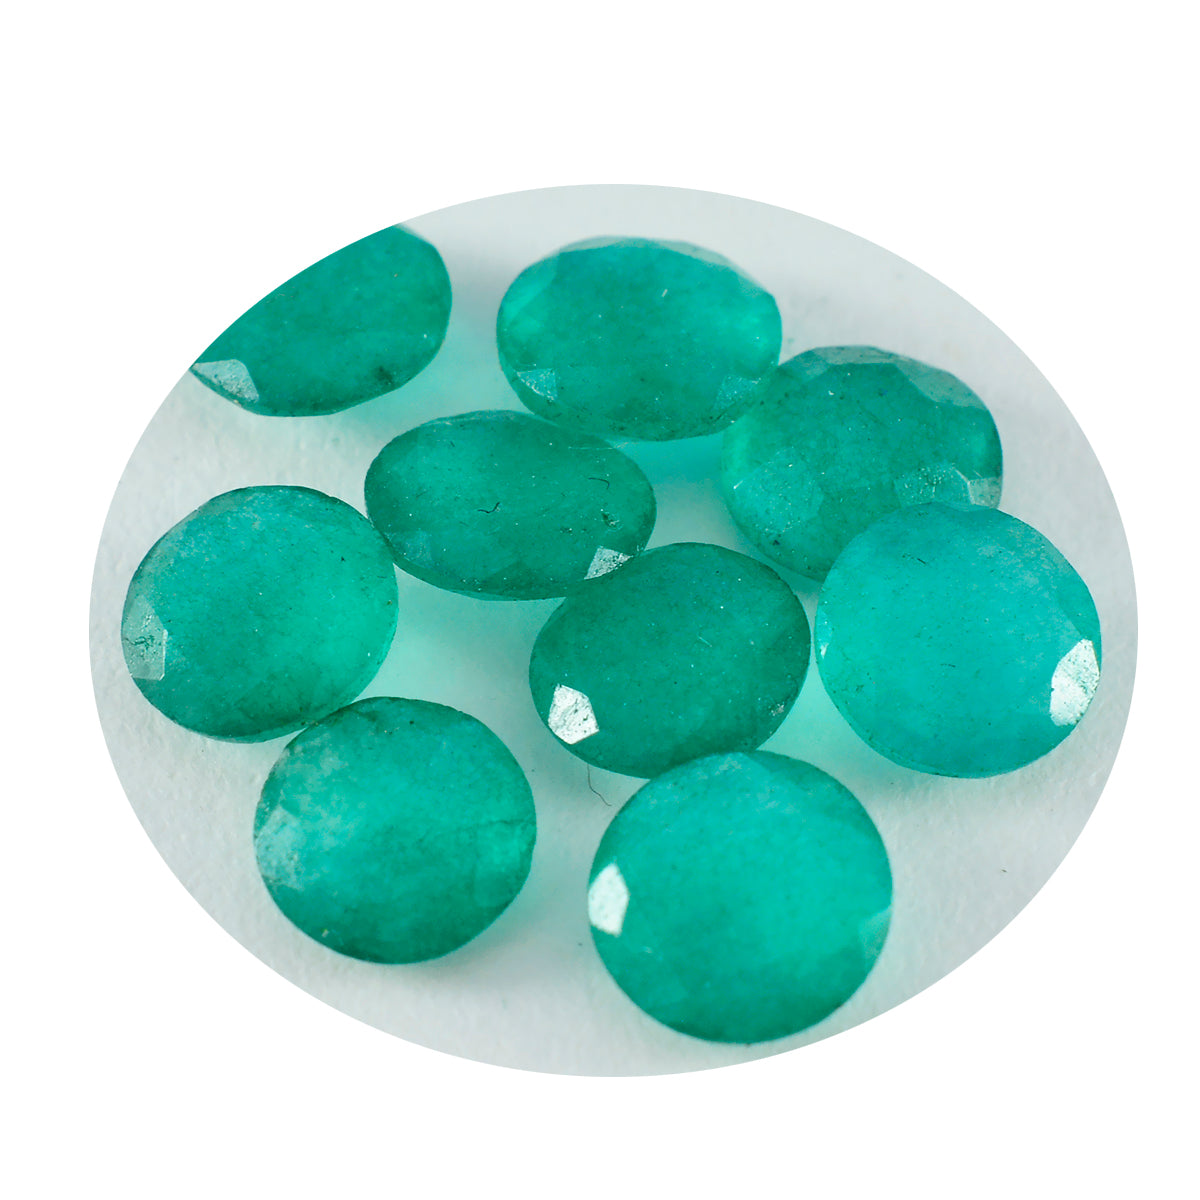 riyogems 1 шт. натуральная зеленая яшма граненая 9x9 мм круглая форма красивый качественный свободный драгоценный камень